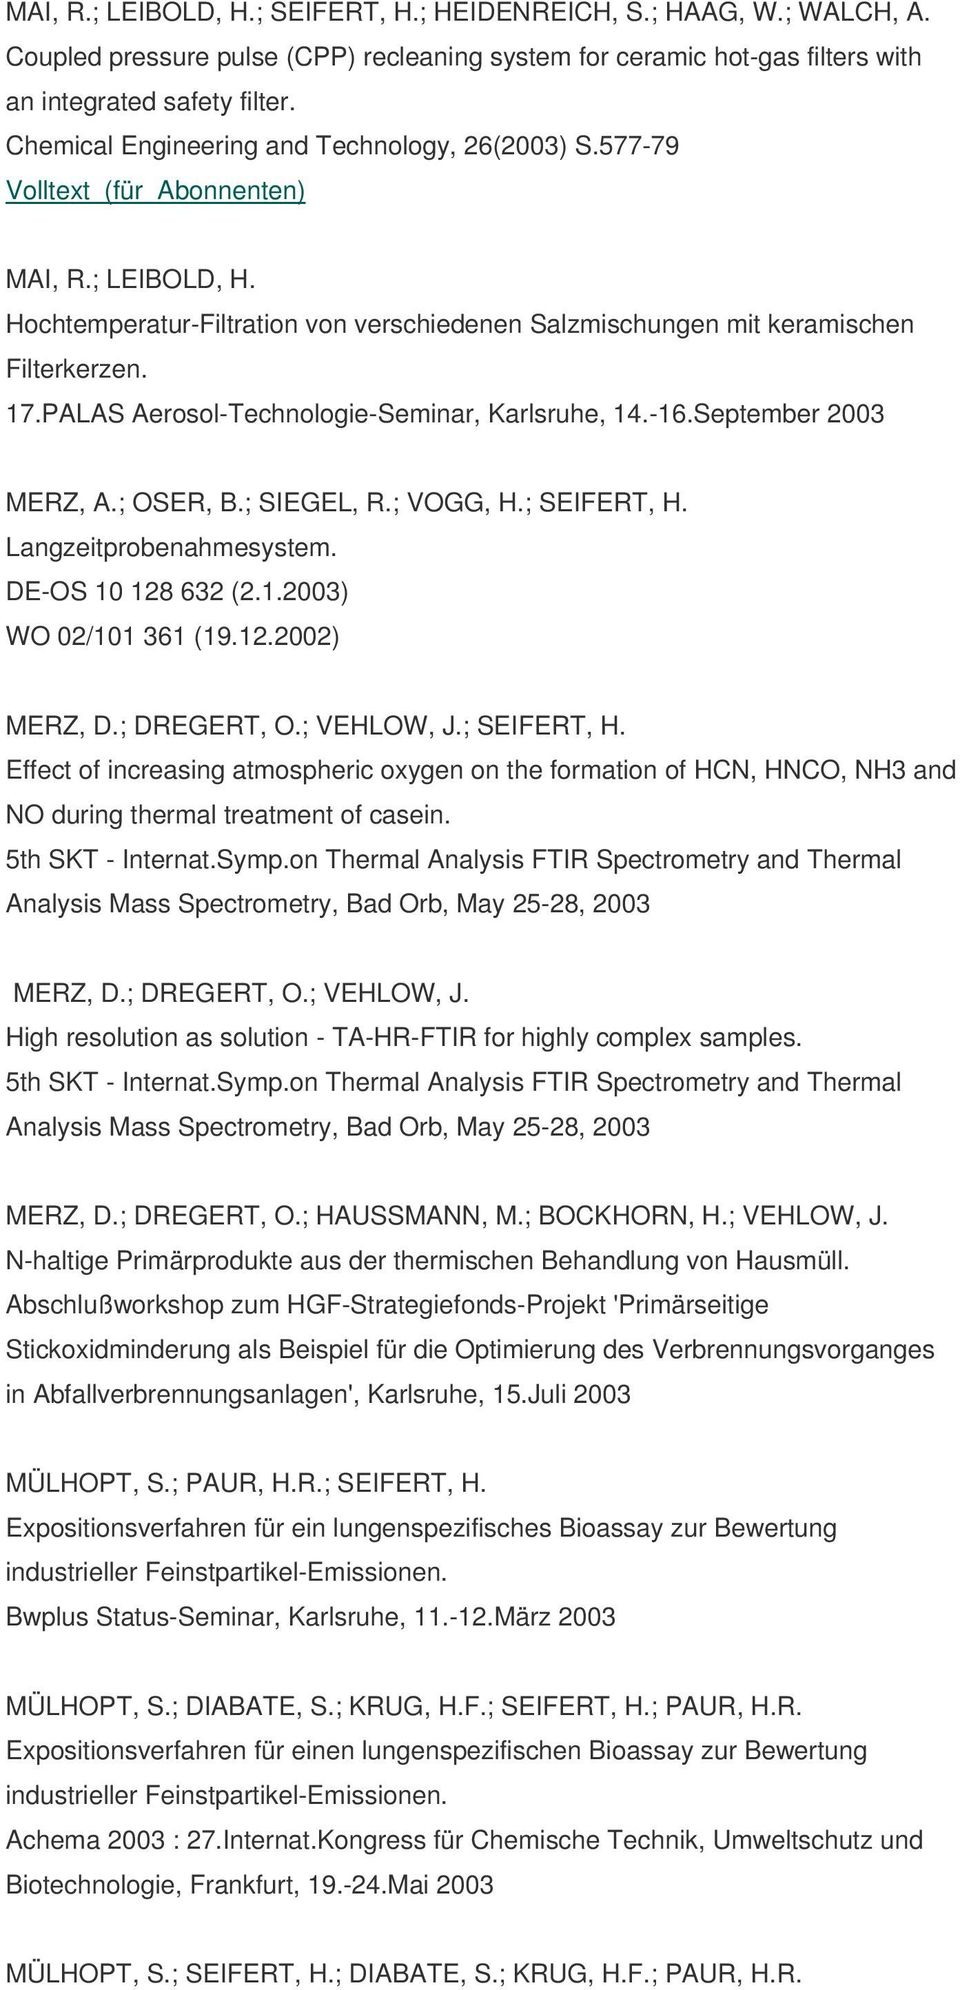 PALAS Aerosol-Technologie-Seminar, Karlsruhe, 14.-16.September 2003 MERZ, A.; OSER, B.; SIEGEL, R.; VOGG, H.; SEIFERT, H. Langzeitprobenahmesystem. DE-OS 10 128 632 (2.1.2003) WO 02/101 361 (19.12.2002) MERZ, D.